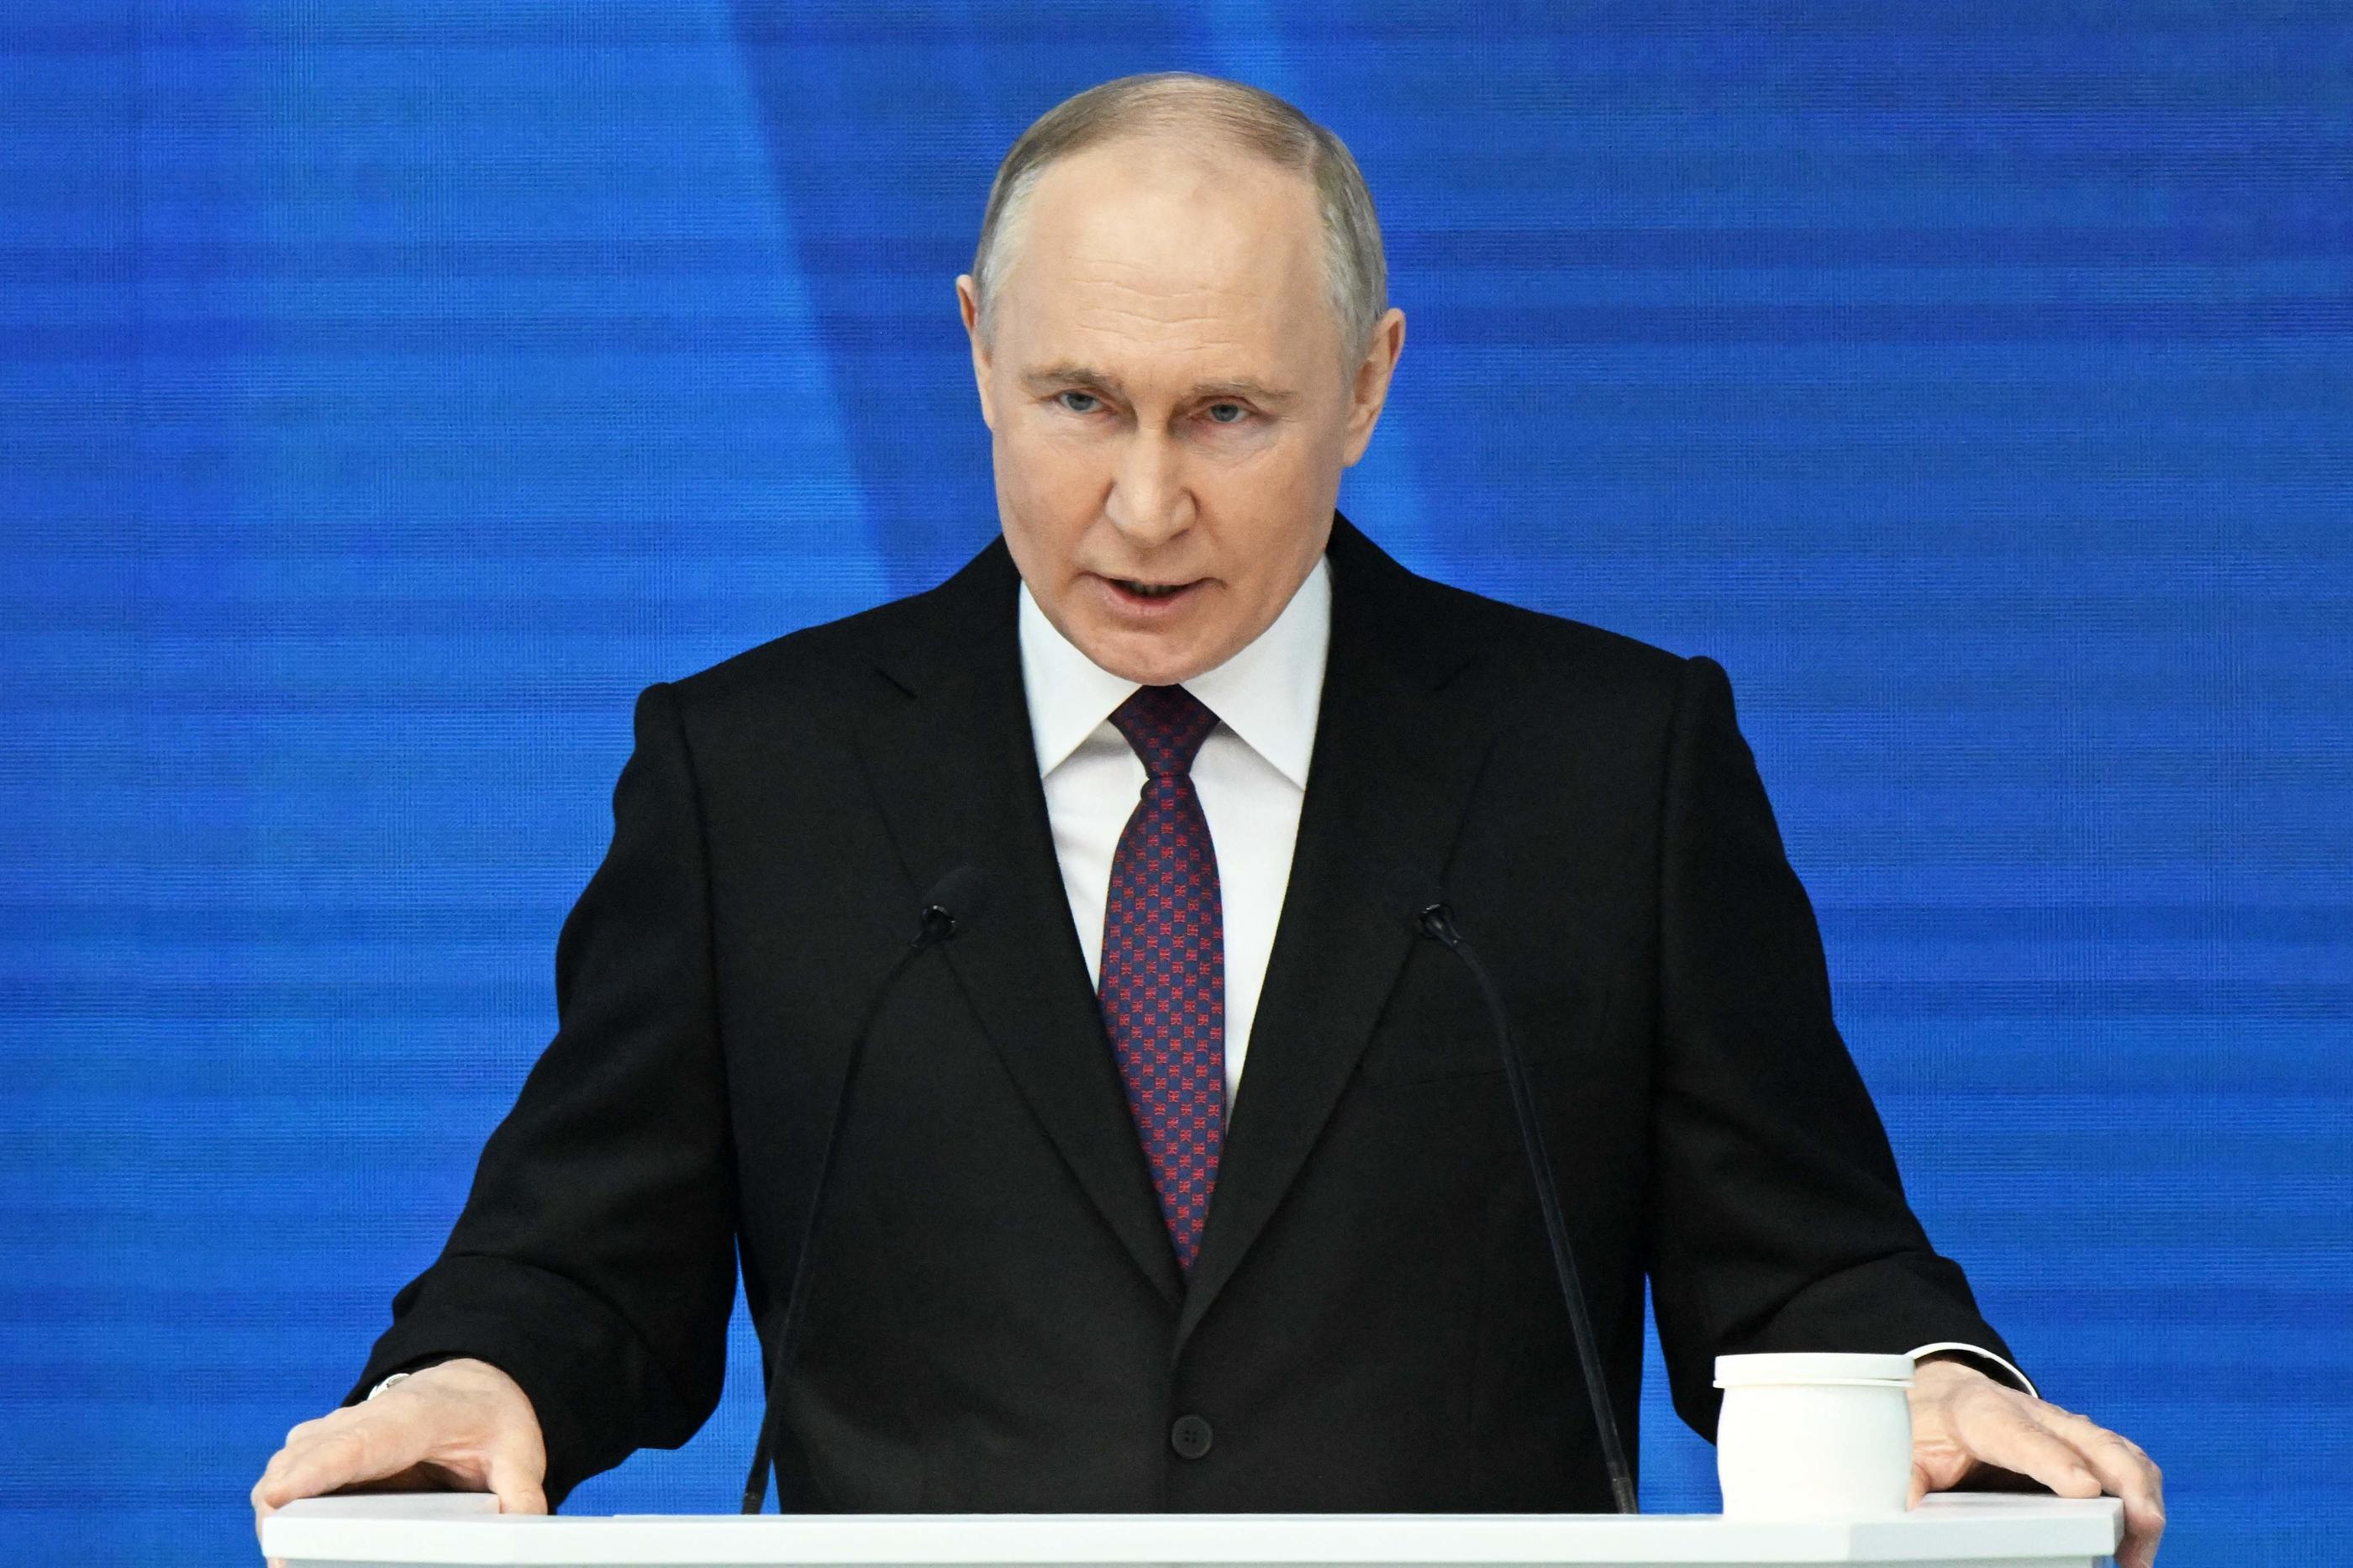 Lors de son discours, ce jeudi, Vladimir Poutine a une nouvelle fois montré les crocs, une posture destinée à impressionner les dirigeants européens, notamment Emmanuel Macron. Pool/AFP/Sergey Guneyev